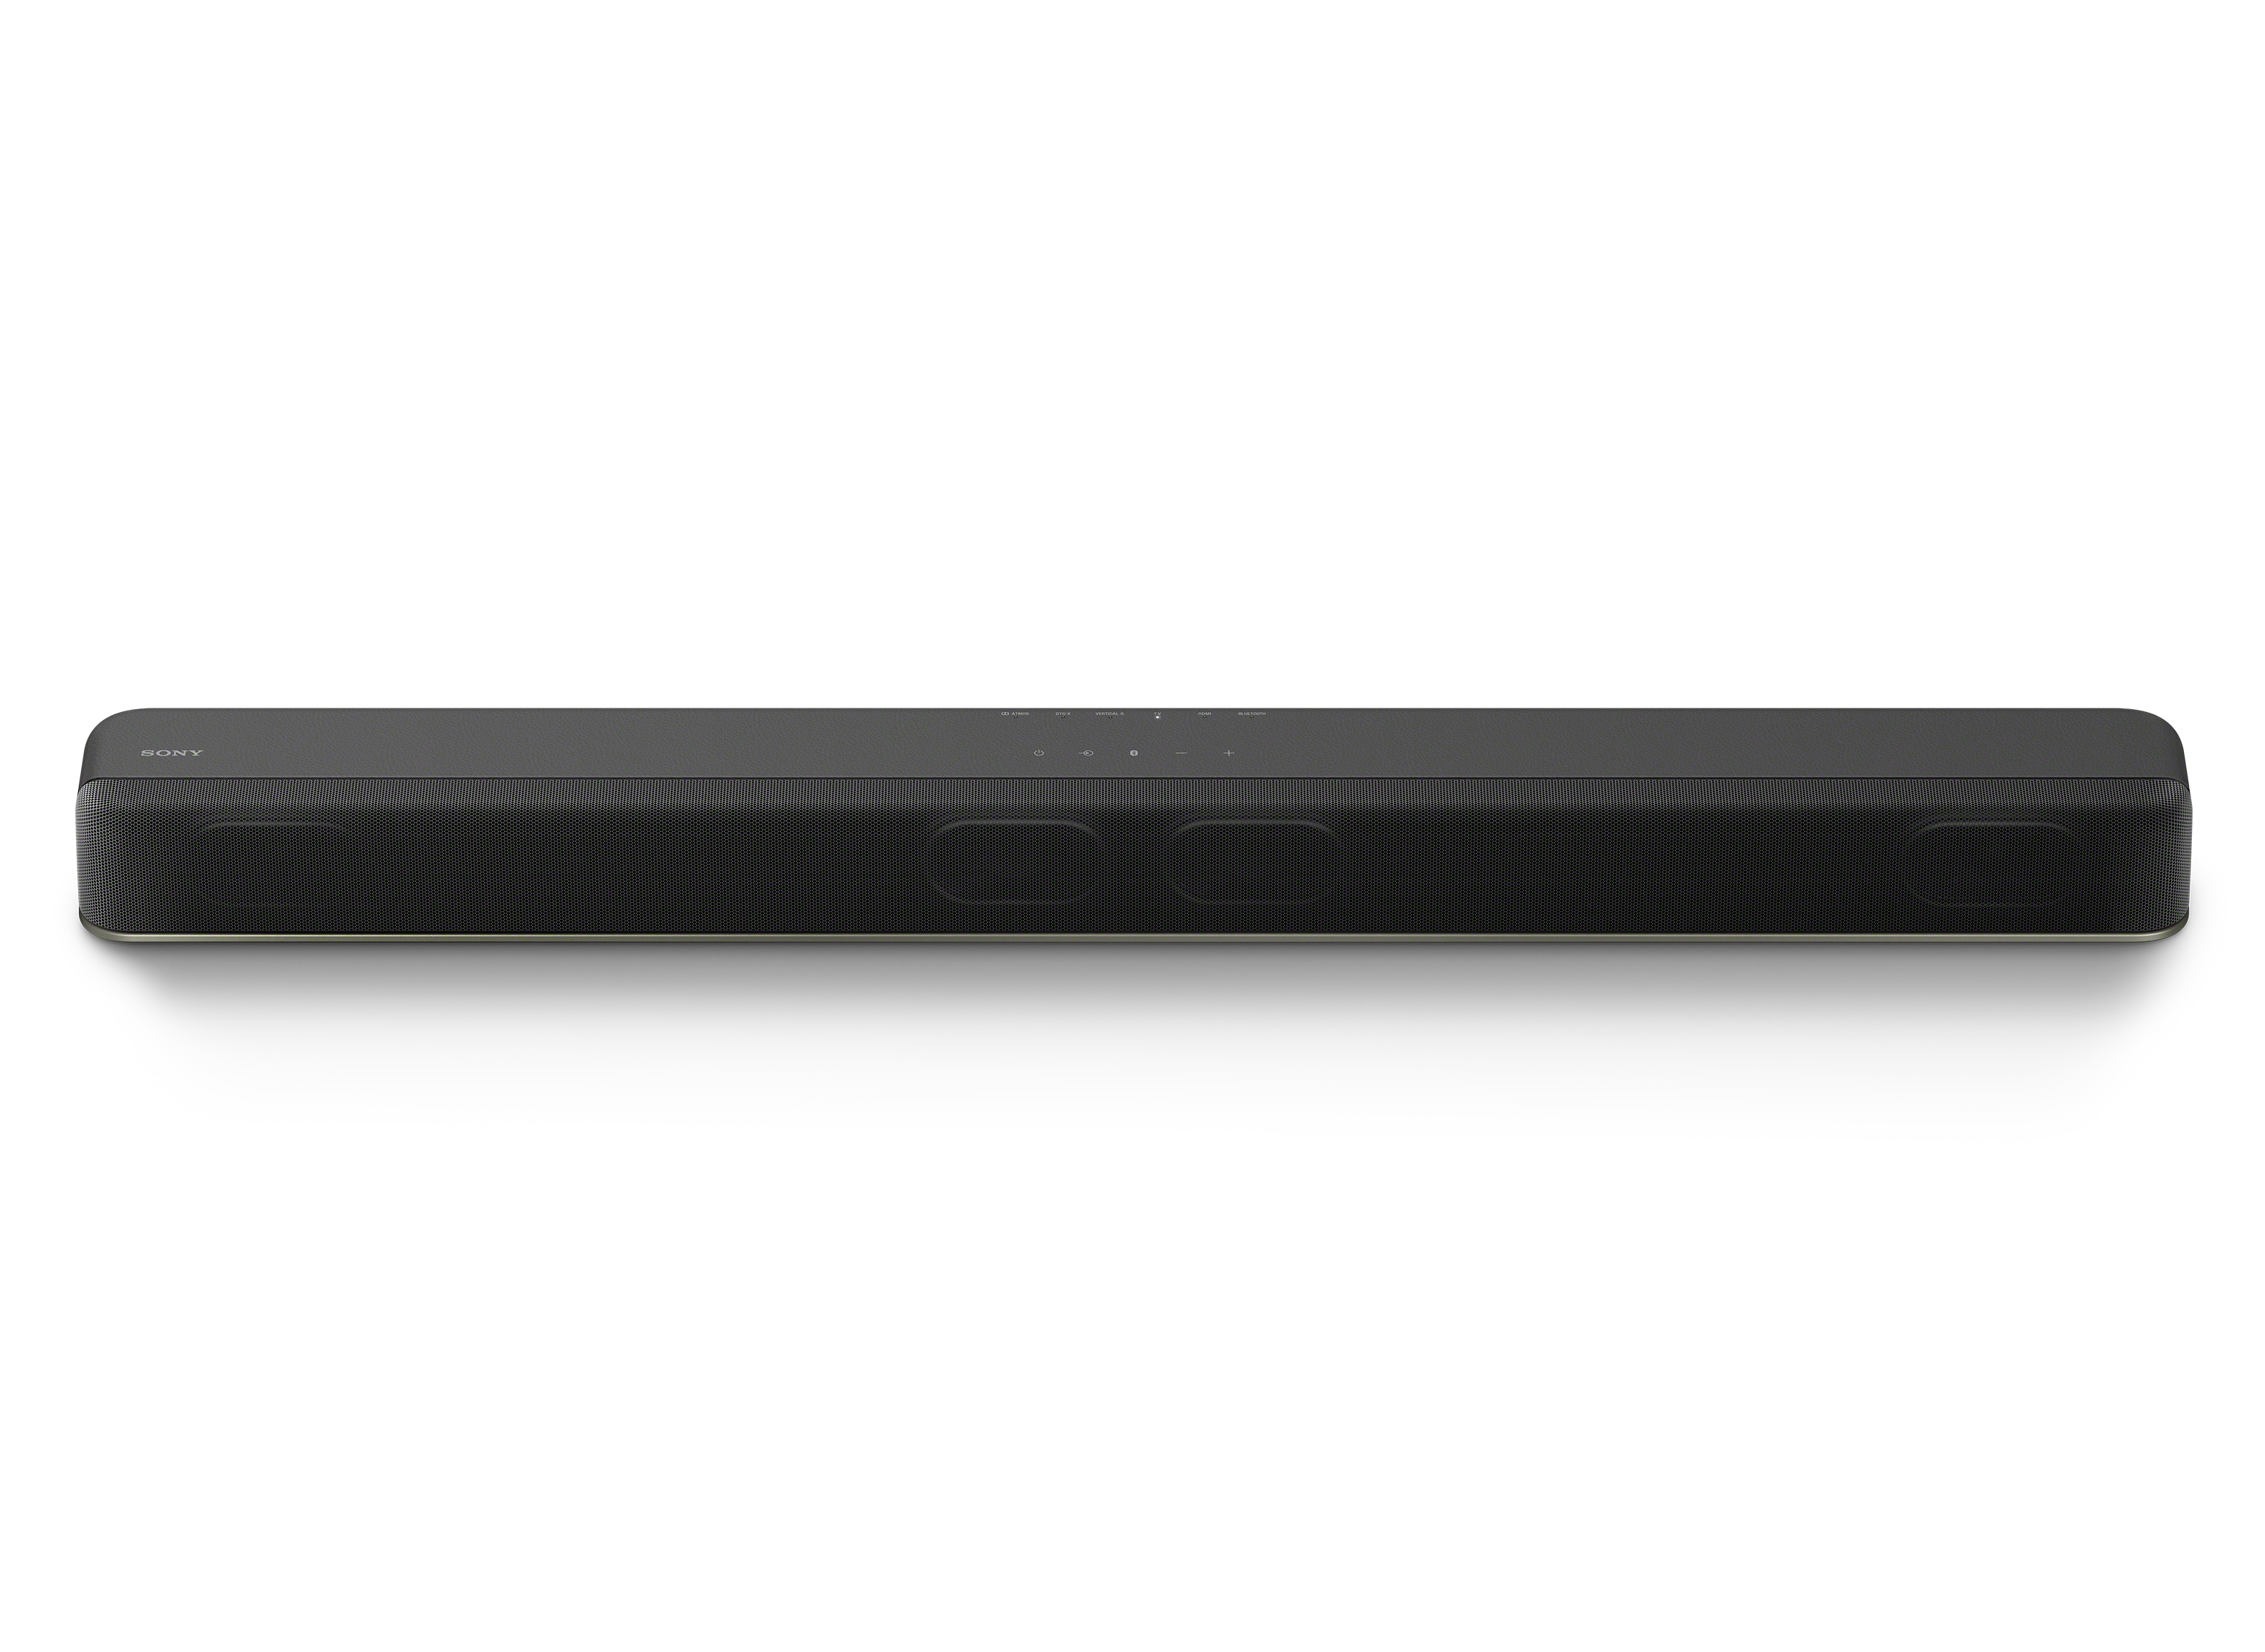 オーディオ機器 スピーカー Sony HT-X8500 Soundbar Review - Consumer Reports